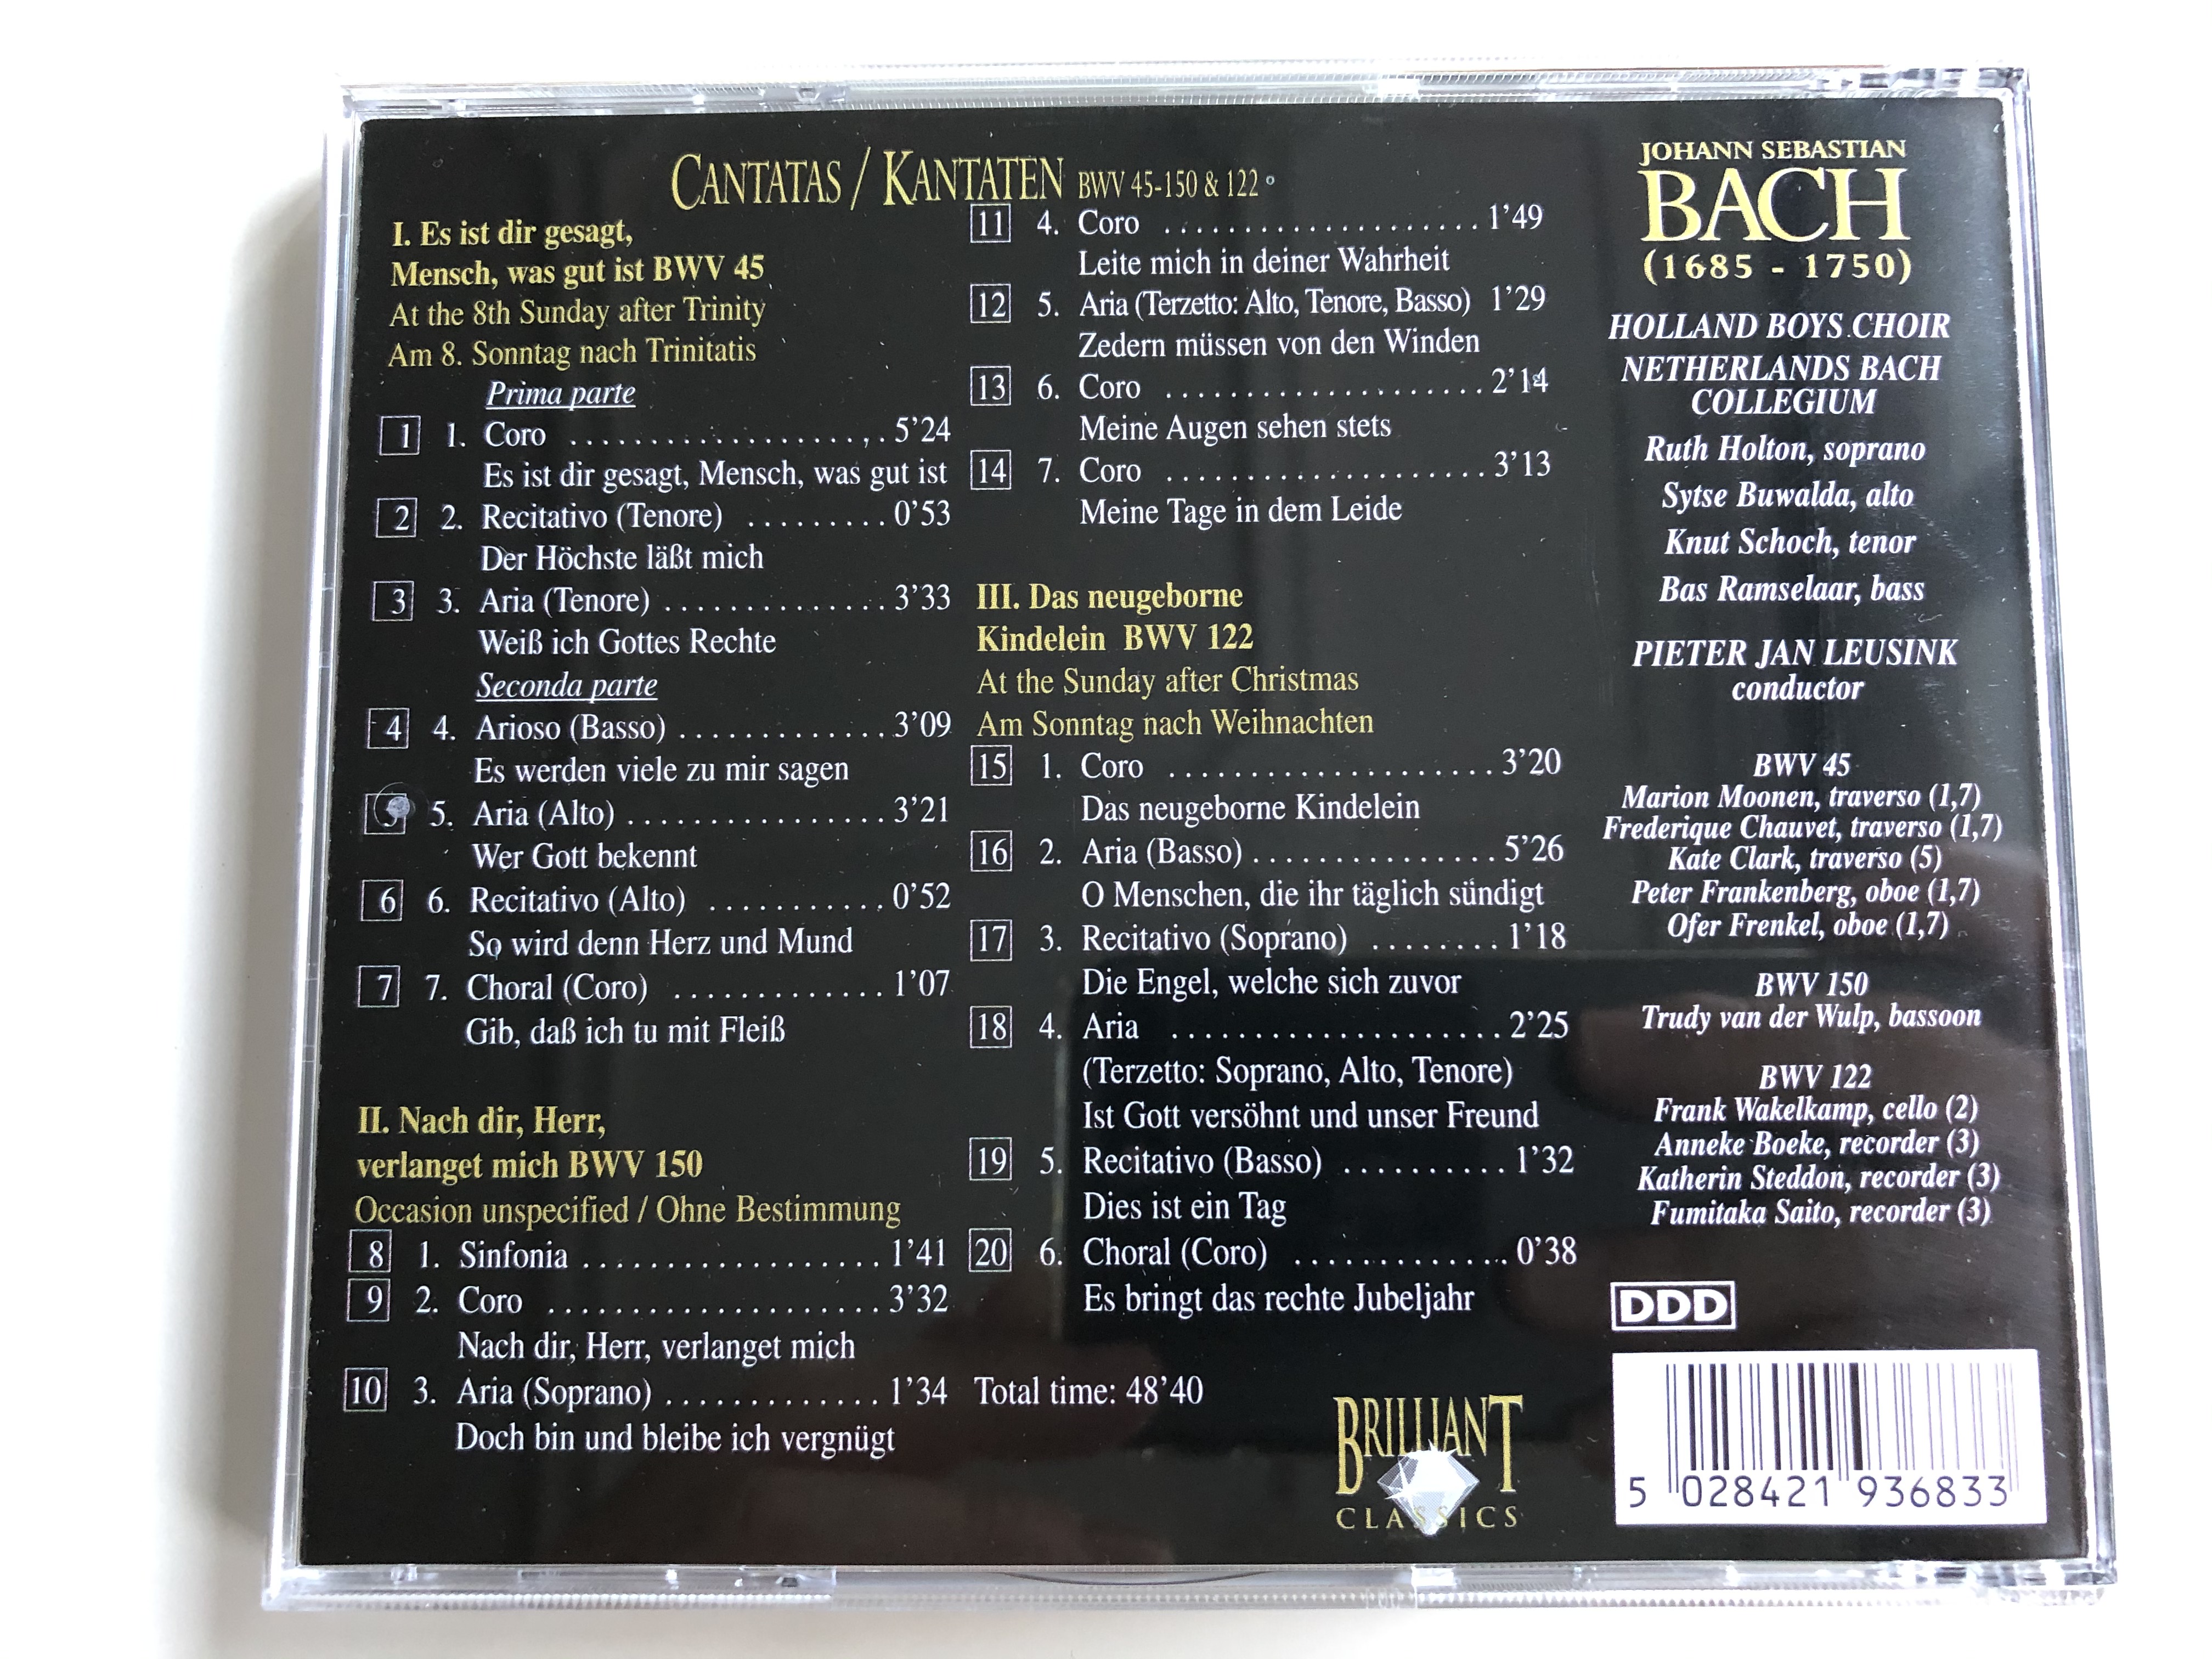 bach-edition-cantatas-kantaten-es-ist-dir-gesagt-mensch-was-gut-ist-bwv-45-nach-dir-herr-verlanget-mich-bwv-150-das-neugeborne-kindelein-bwv-122-brilliant-classics-audio-cd-99-4-.jpg